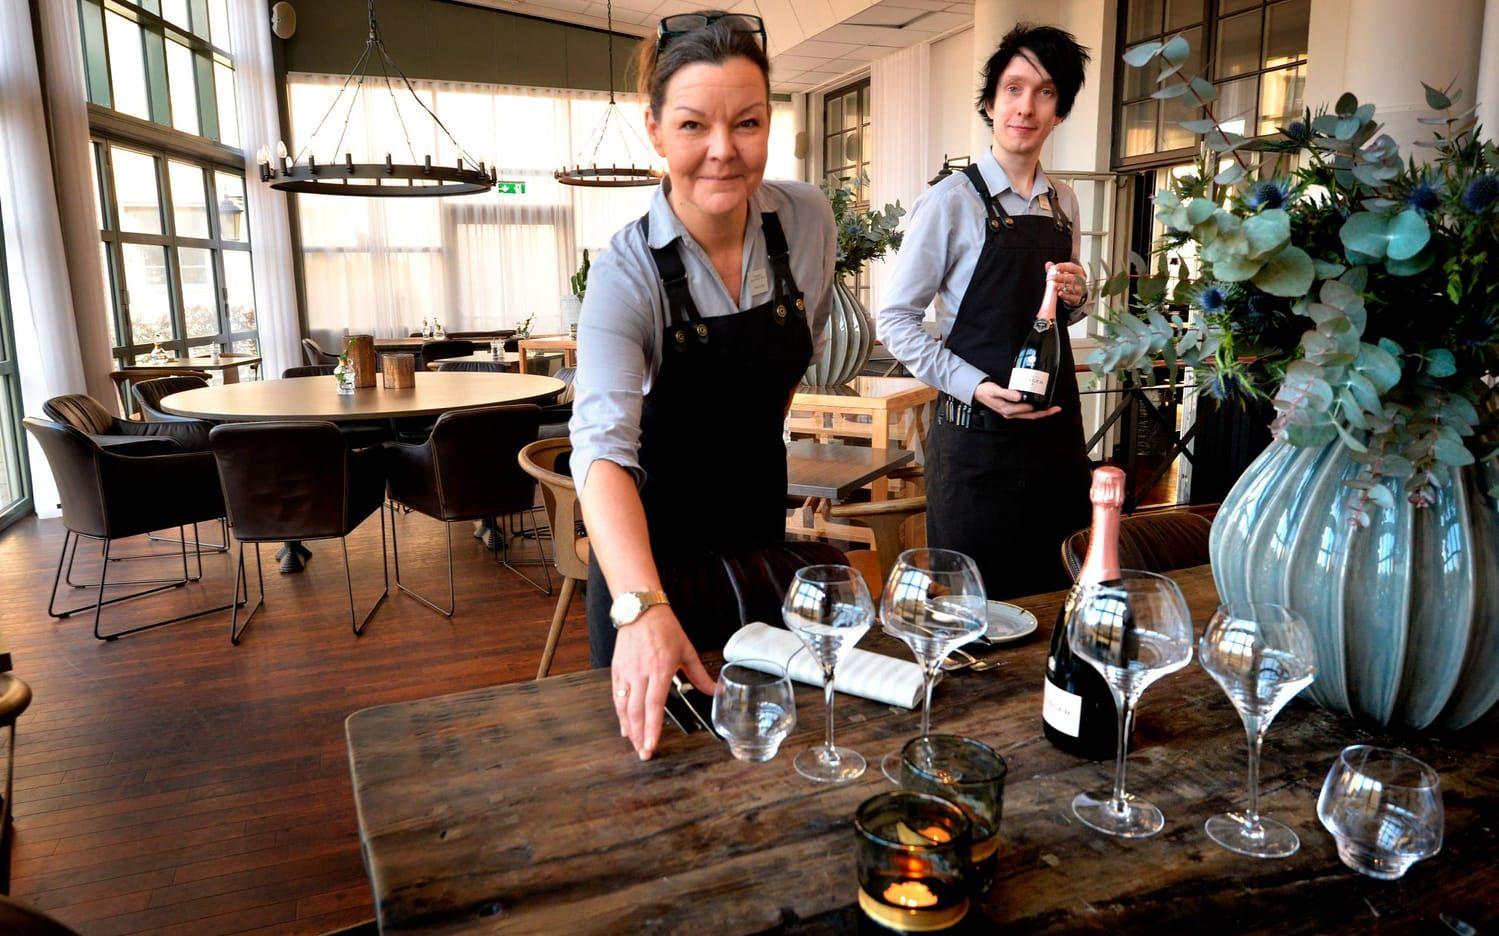 Bjuder till bords. Veronica Johansson och Niclas Johansson arbetar i restaurangen som servispersonal.